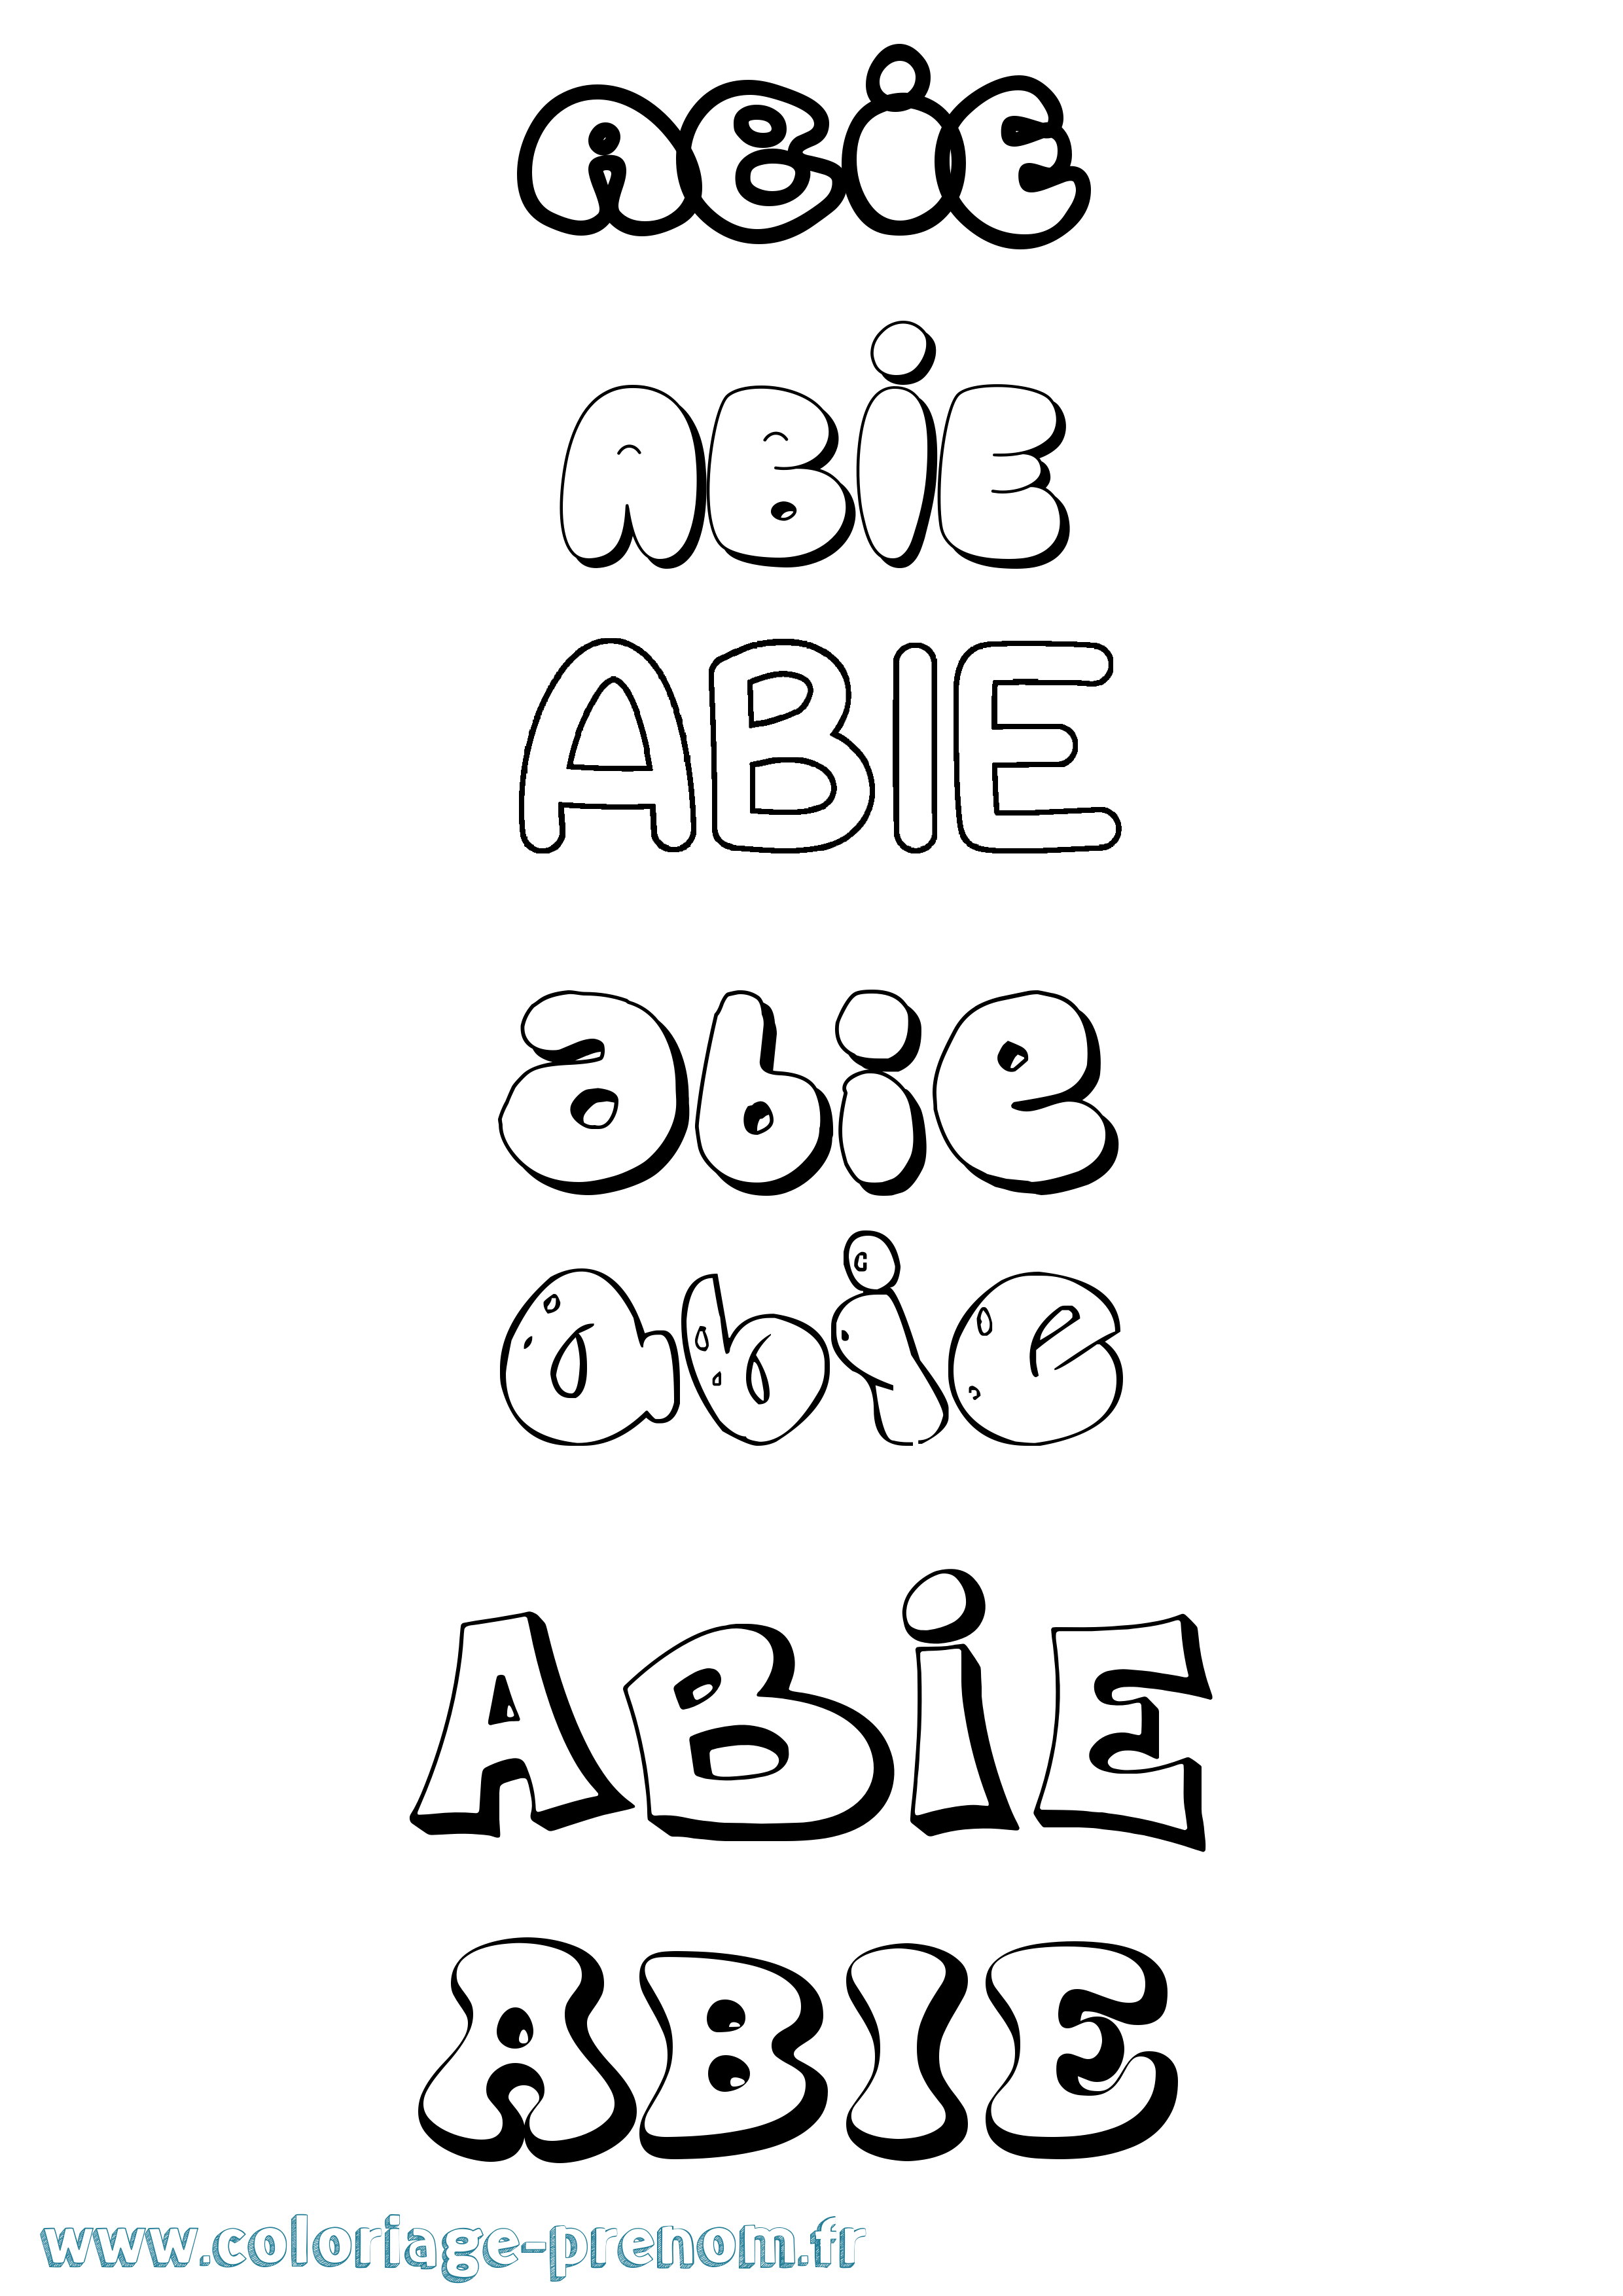 Coloriage prénom Abie